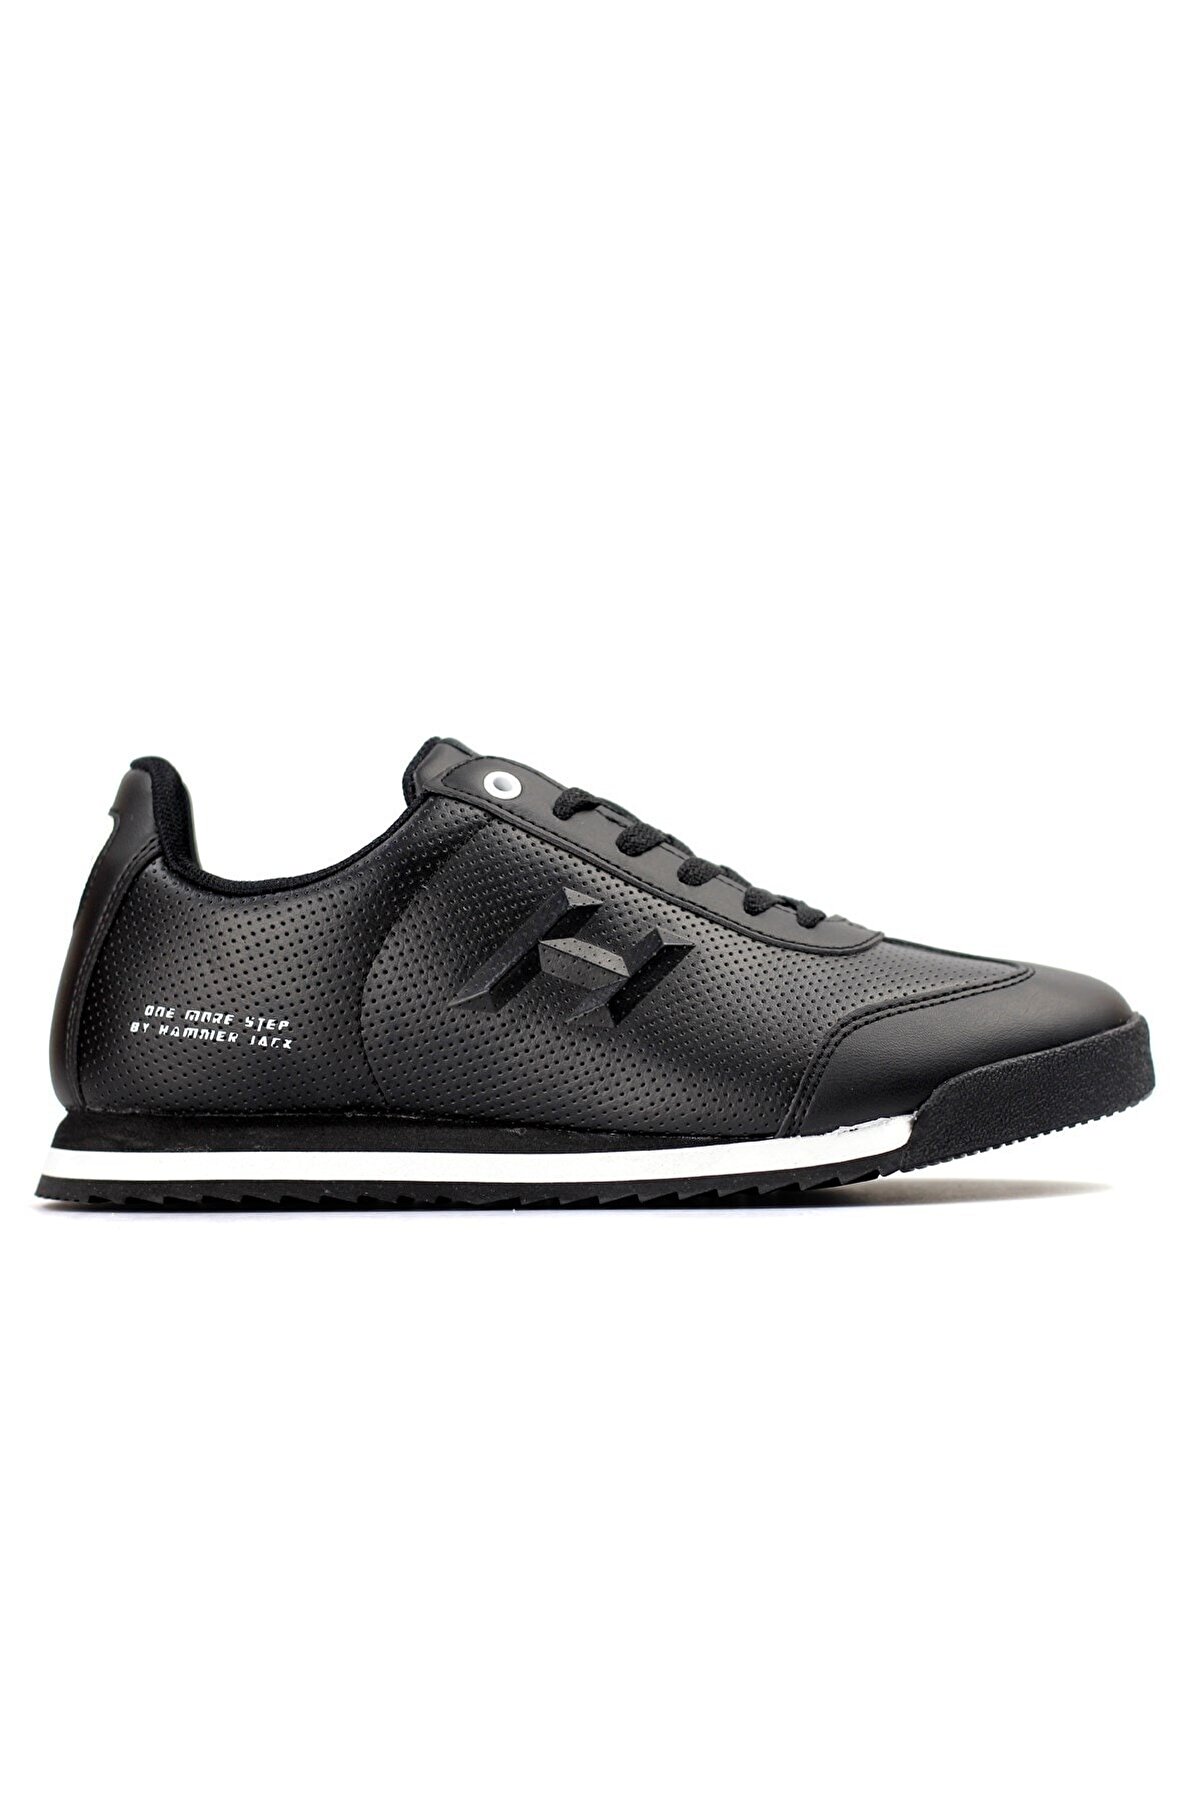 Hammer Jack Erkek Sneaker Spor Ayakkabı H34m021540-siyah Beyaz